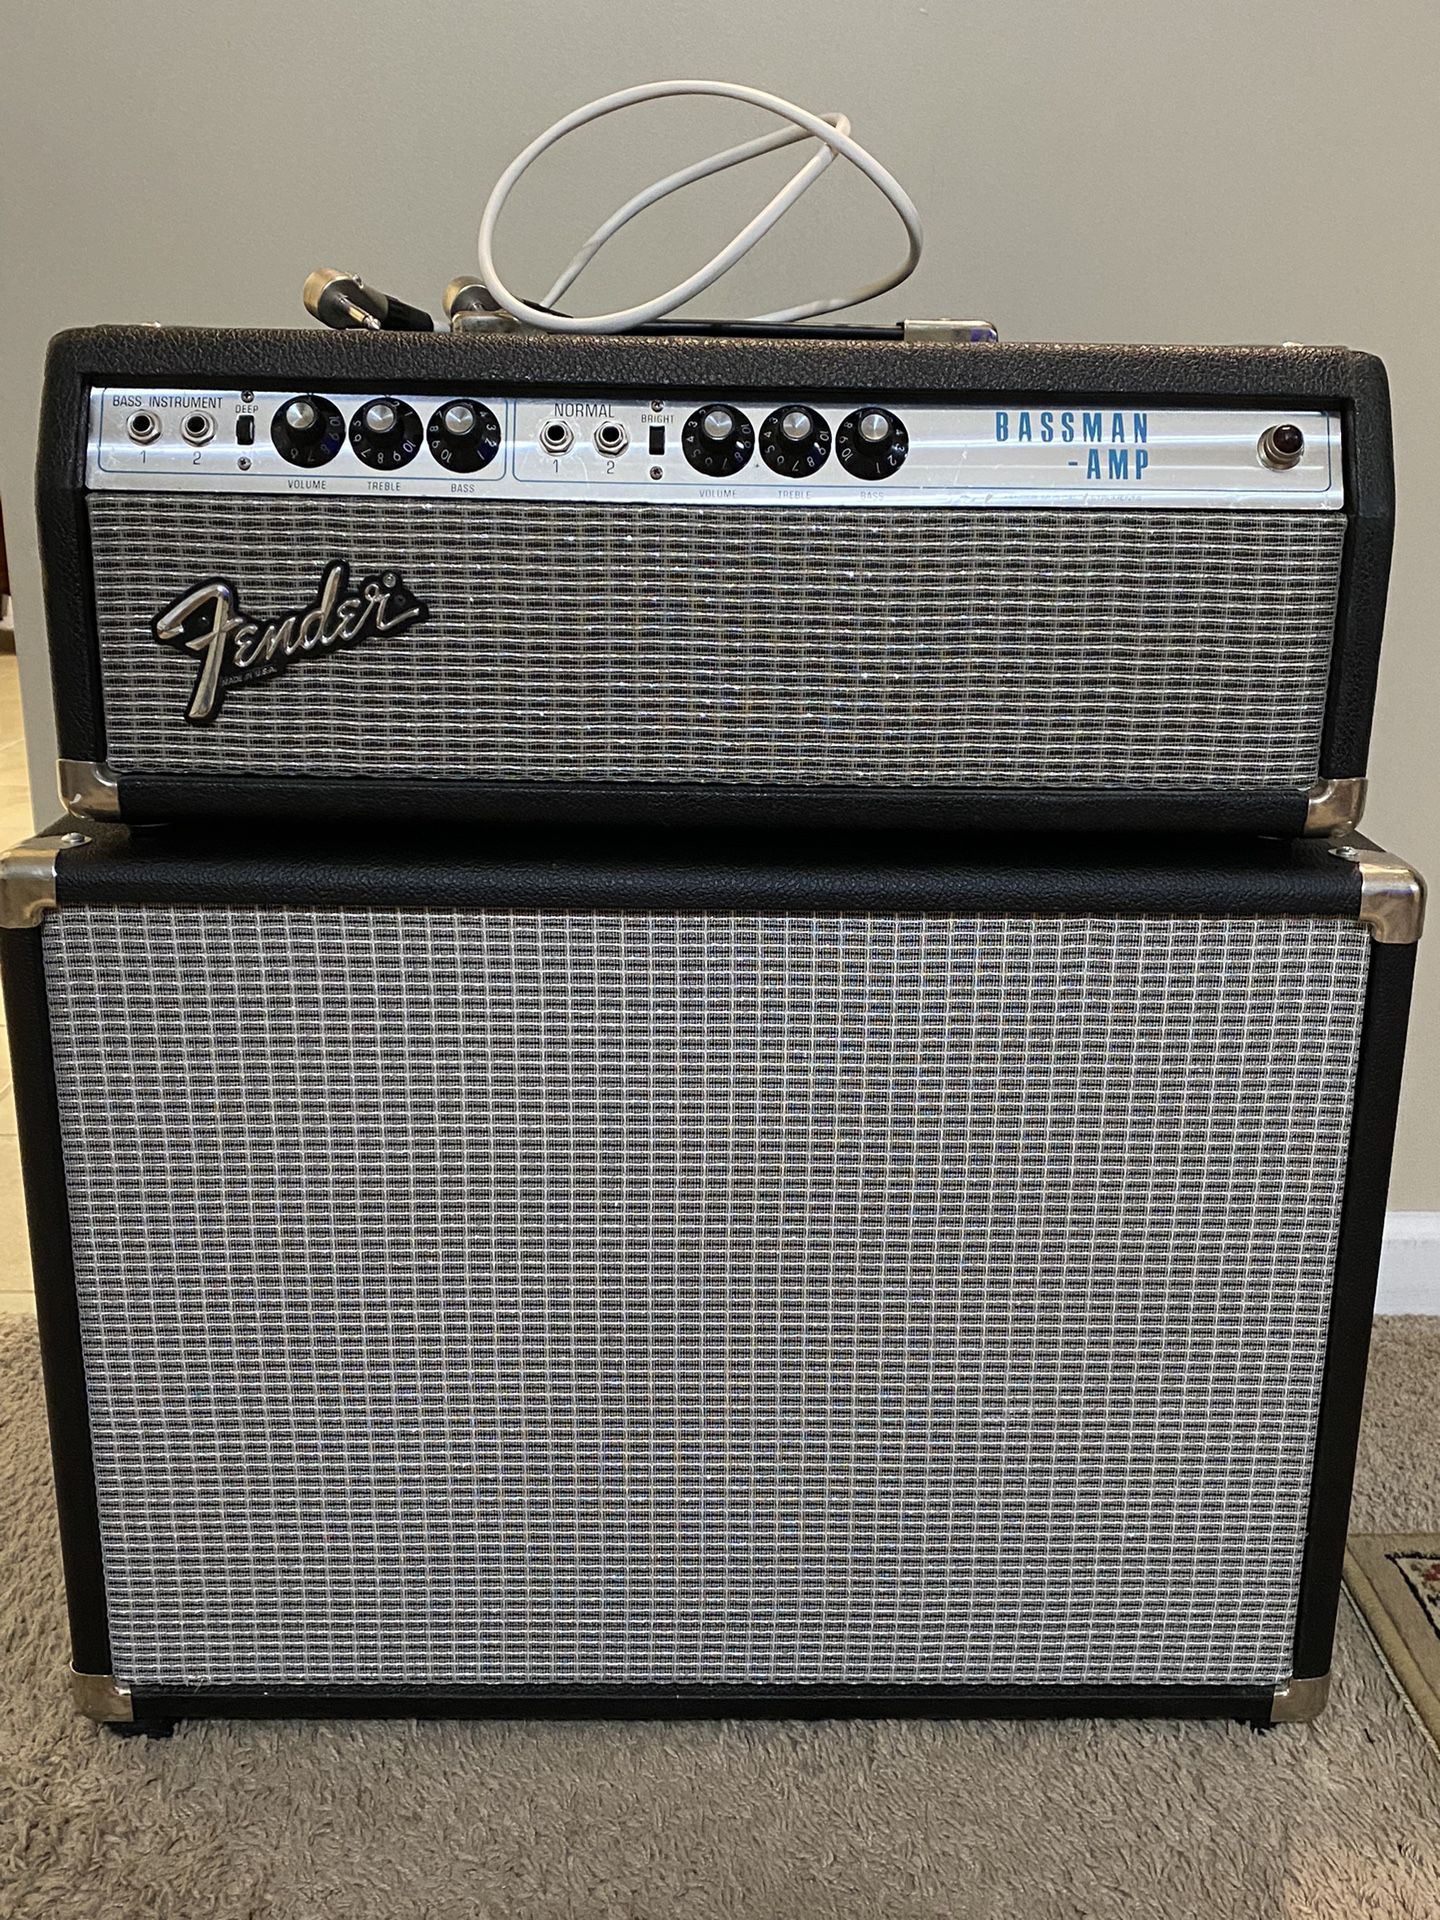 Fender Bassman Amp With Speaker